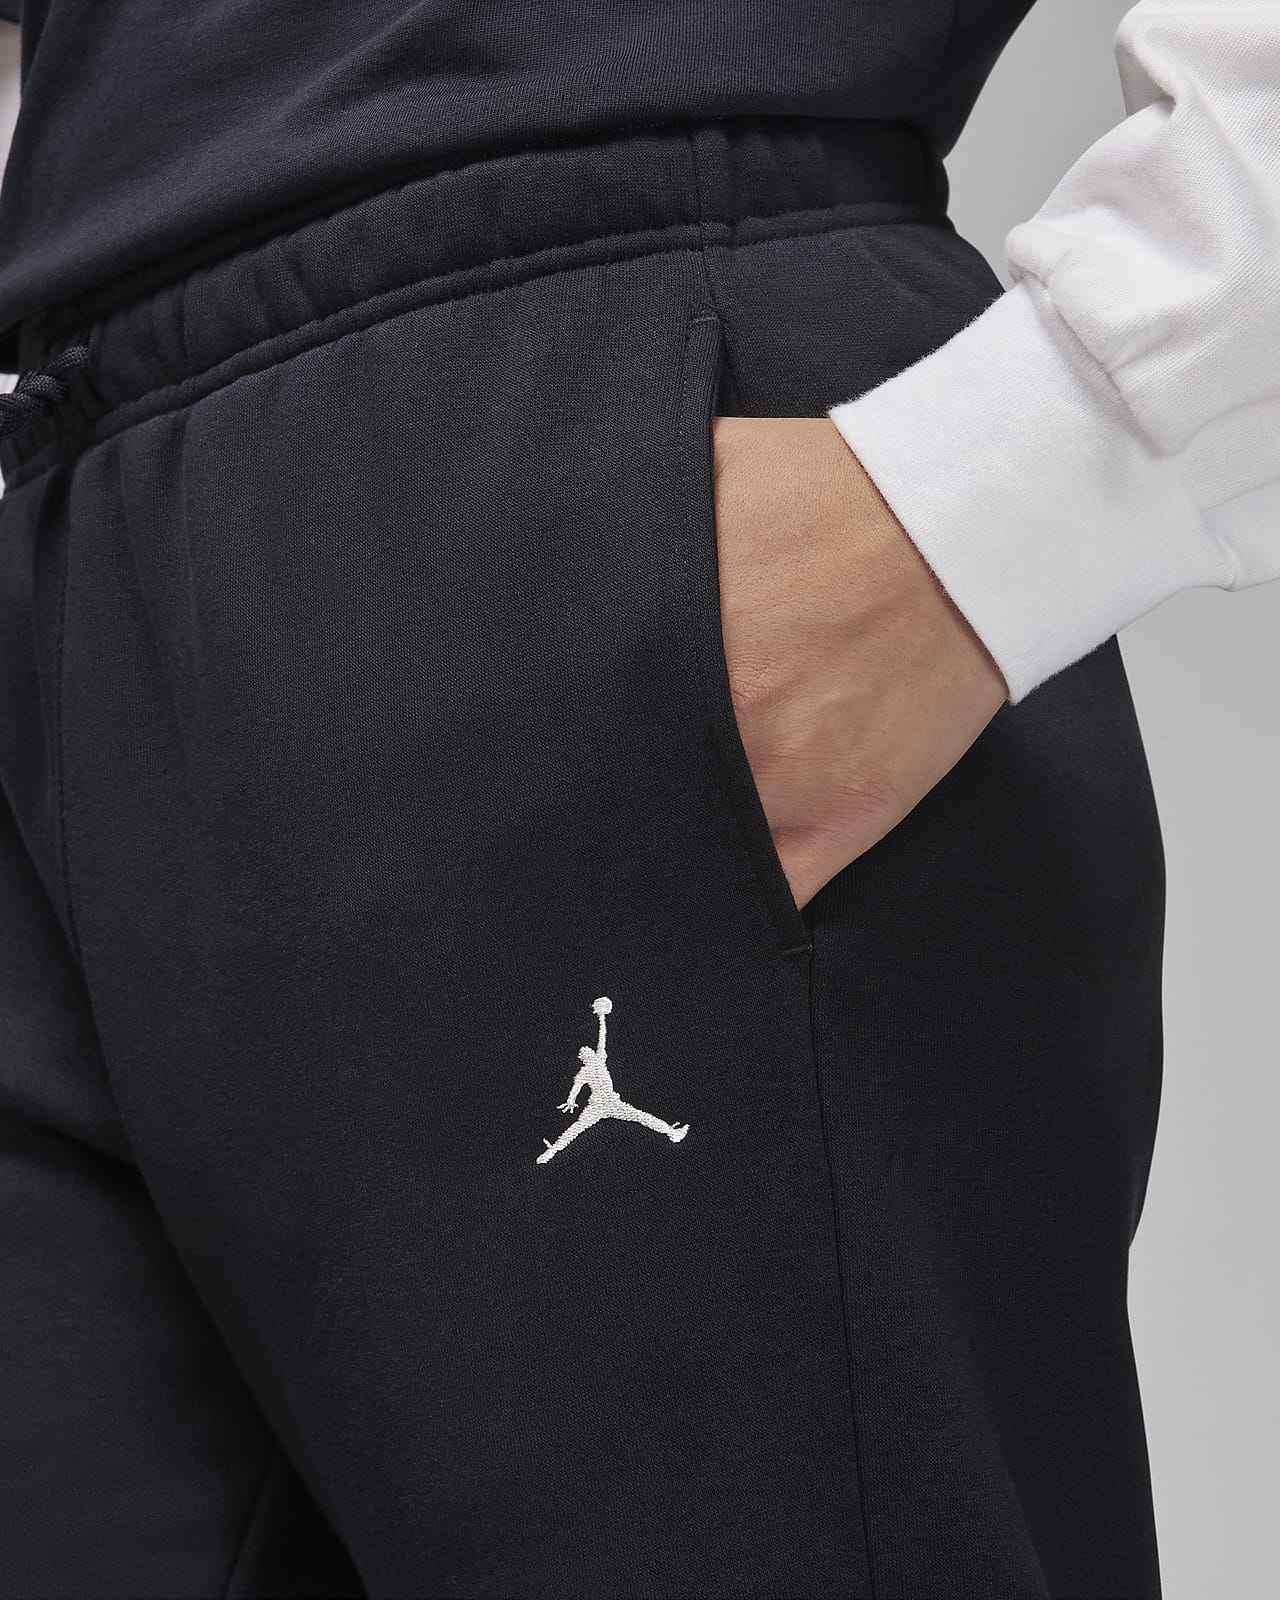 Jordan Brooklyn Fleece Men's Trousers. Nike LU